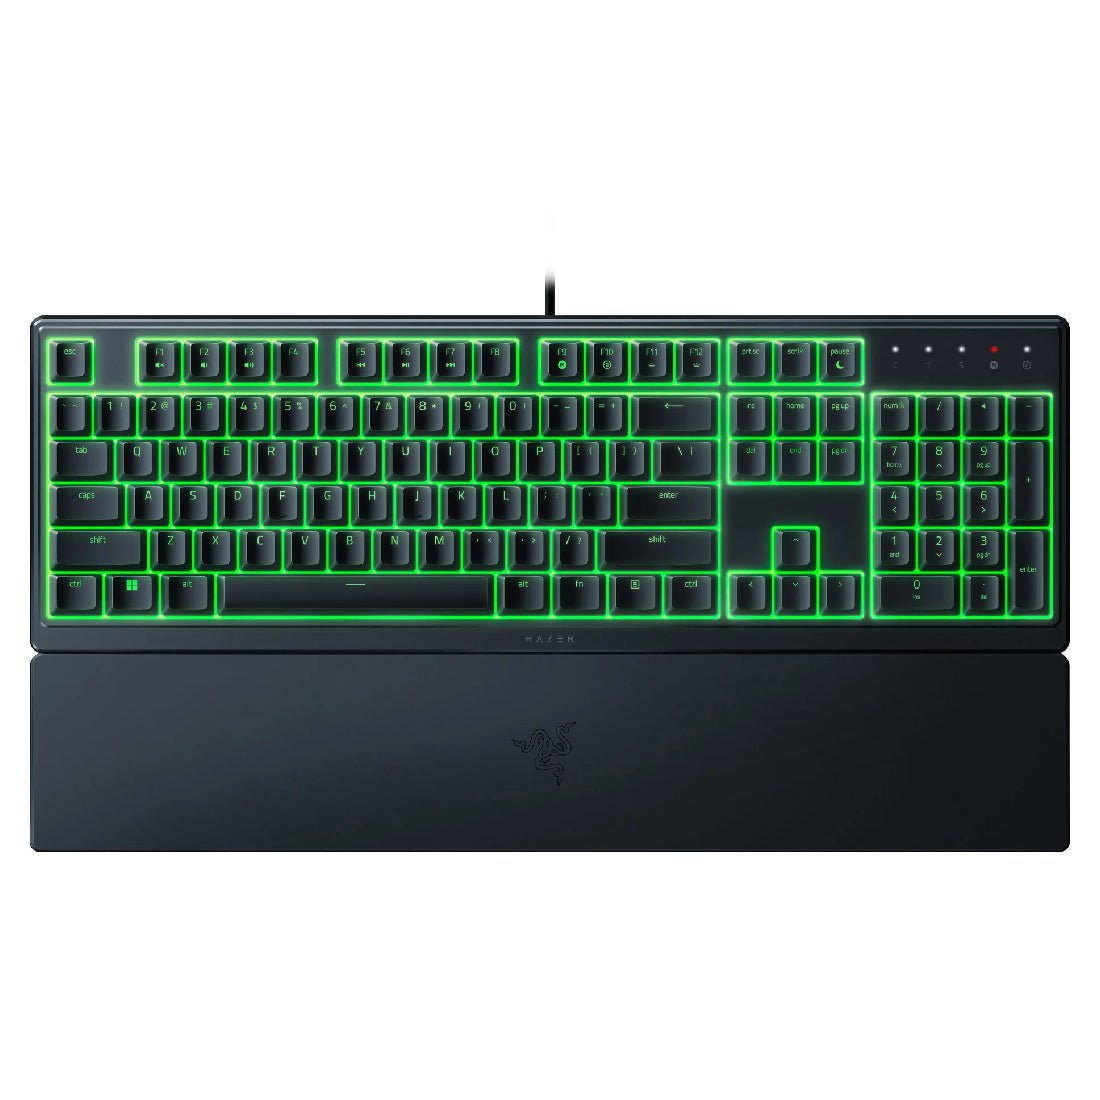 Razer Ornata V3 X RGB Wired Gaming Keyboard - Black - Store 974 | ستور ٩٧٤